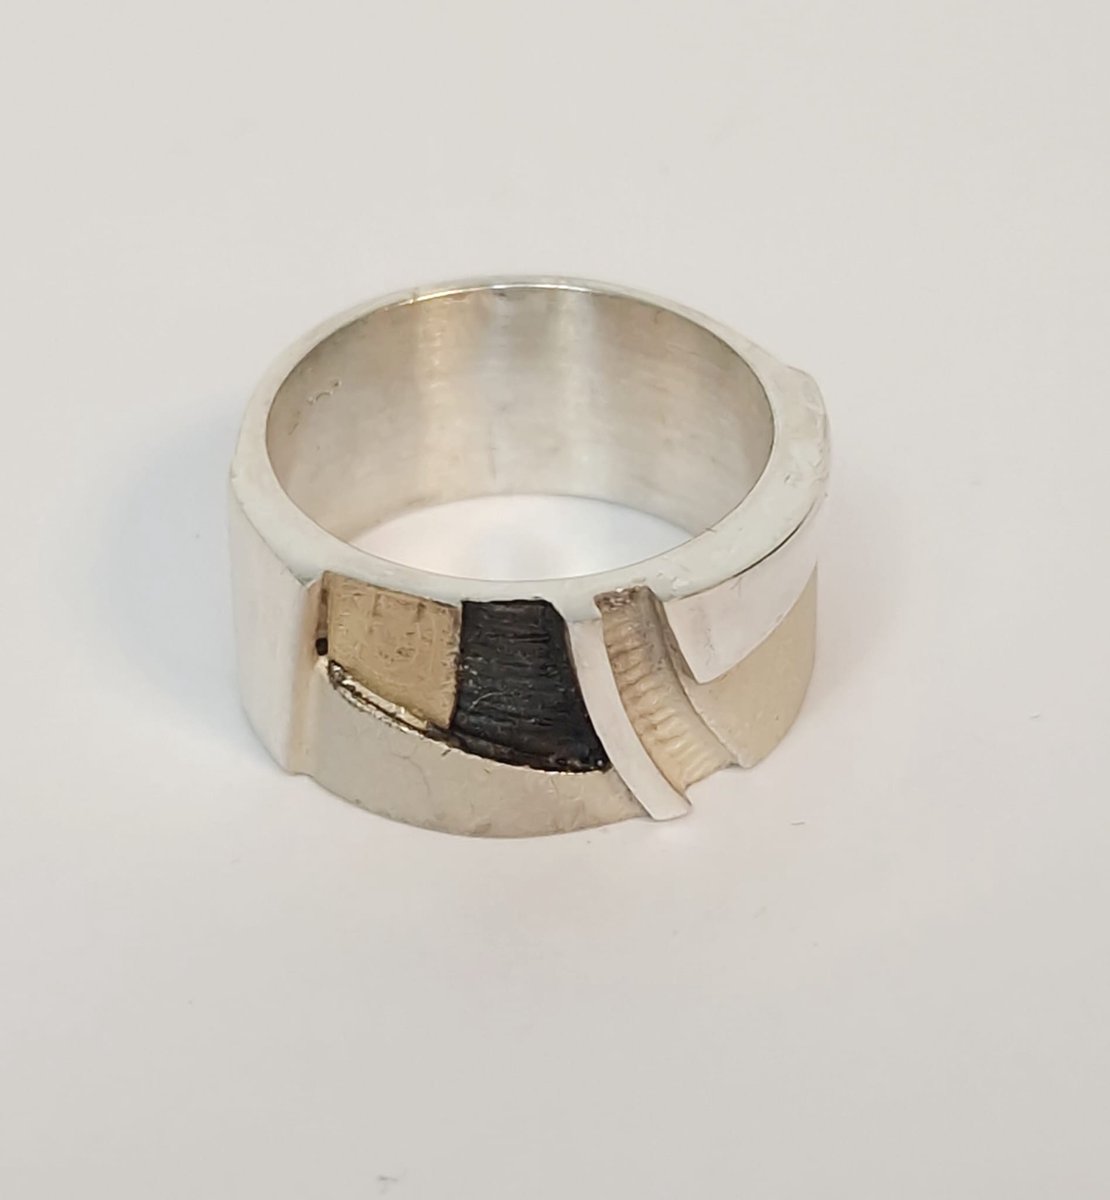 Zilveren dames ring - Audar - geoxideerd zilver - 18 karaat goud - sale Juwelier Verlinden St. Hubert – van €170,= voor €139,=